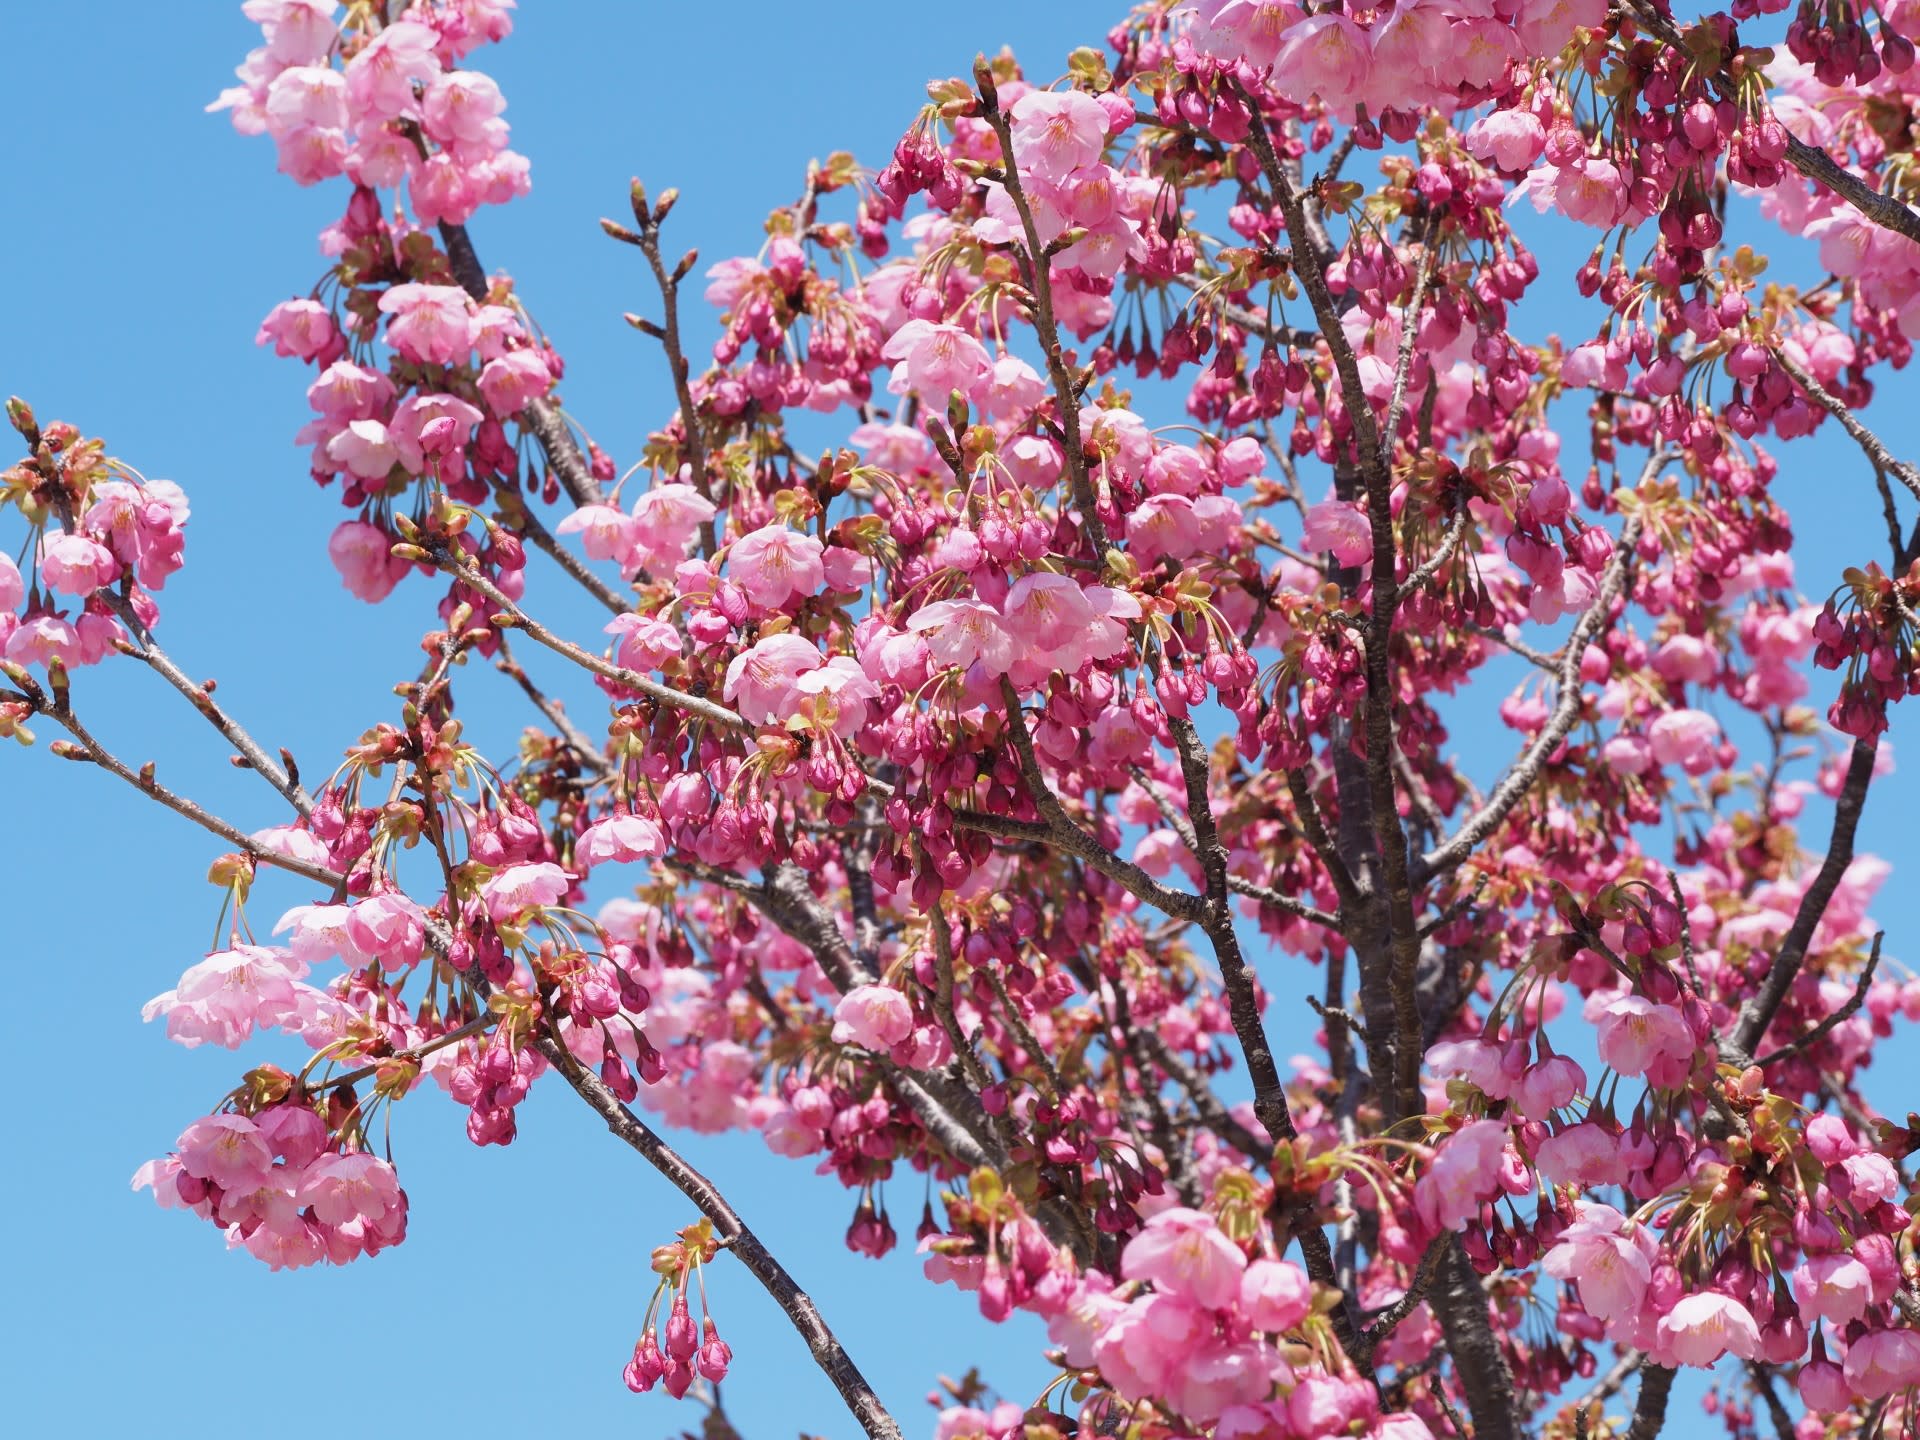 カンヒザクラとヒカンザクラは別の桜なの 花と自然